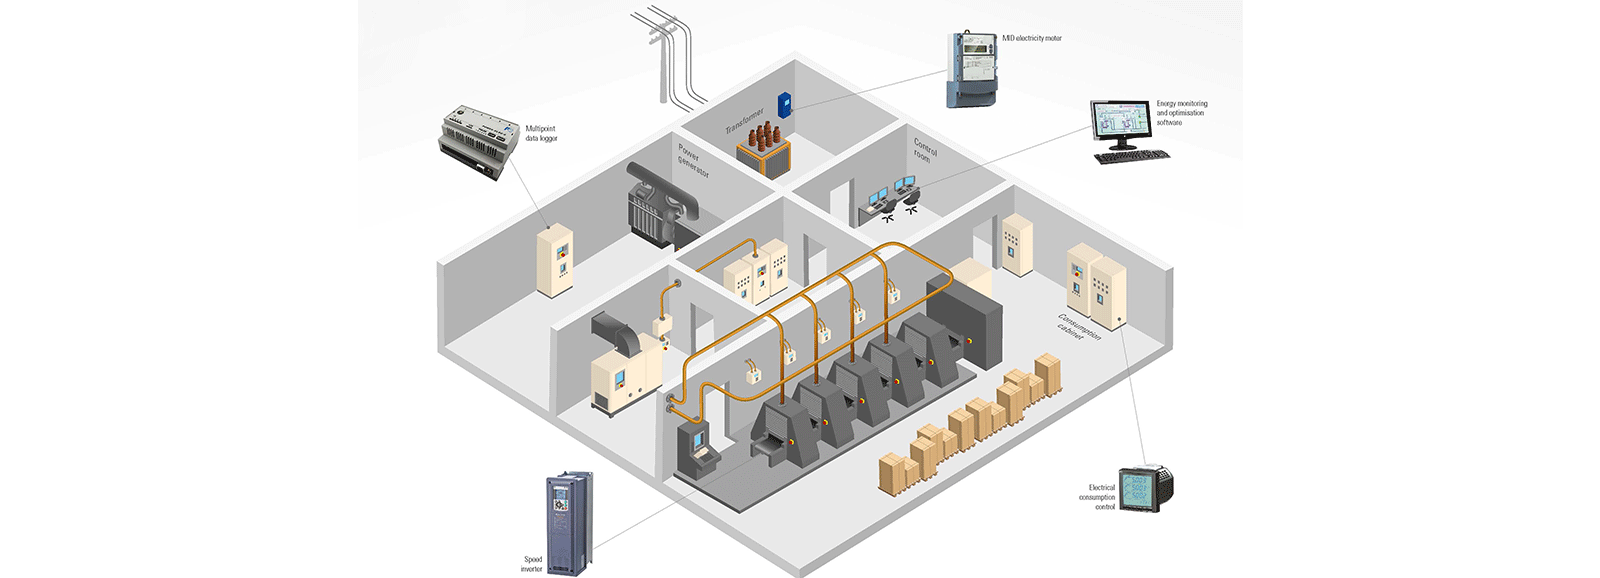 Strommanagement - Produkte von Fuji Electric - Schema